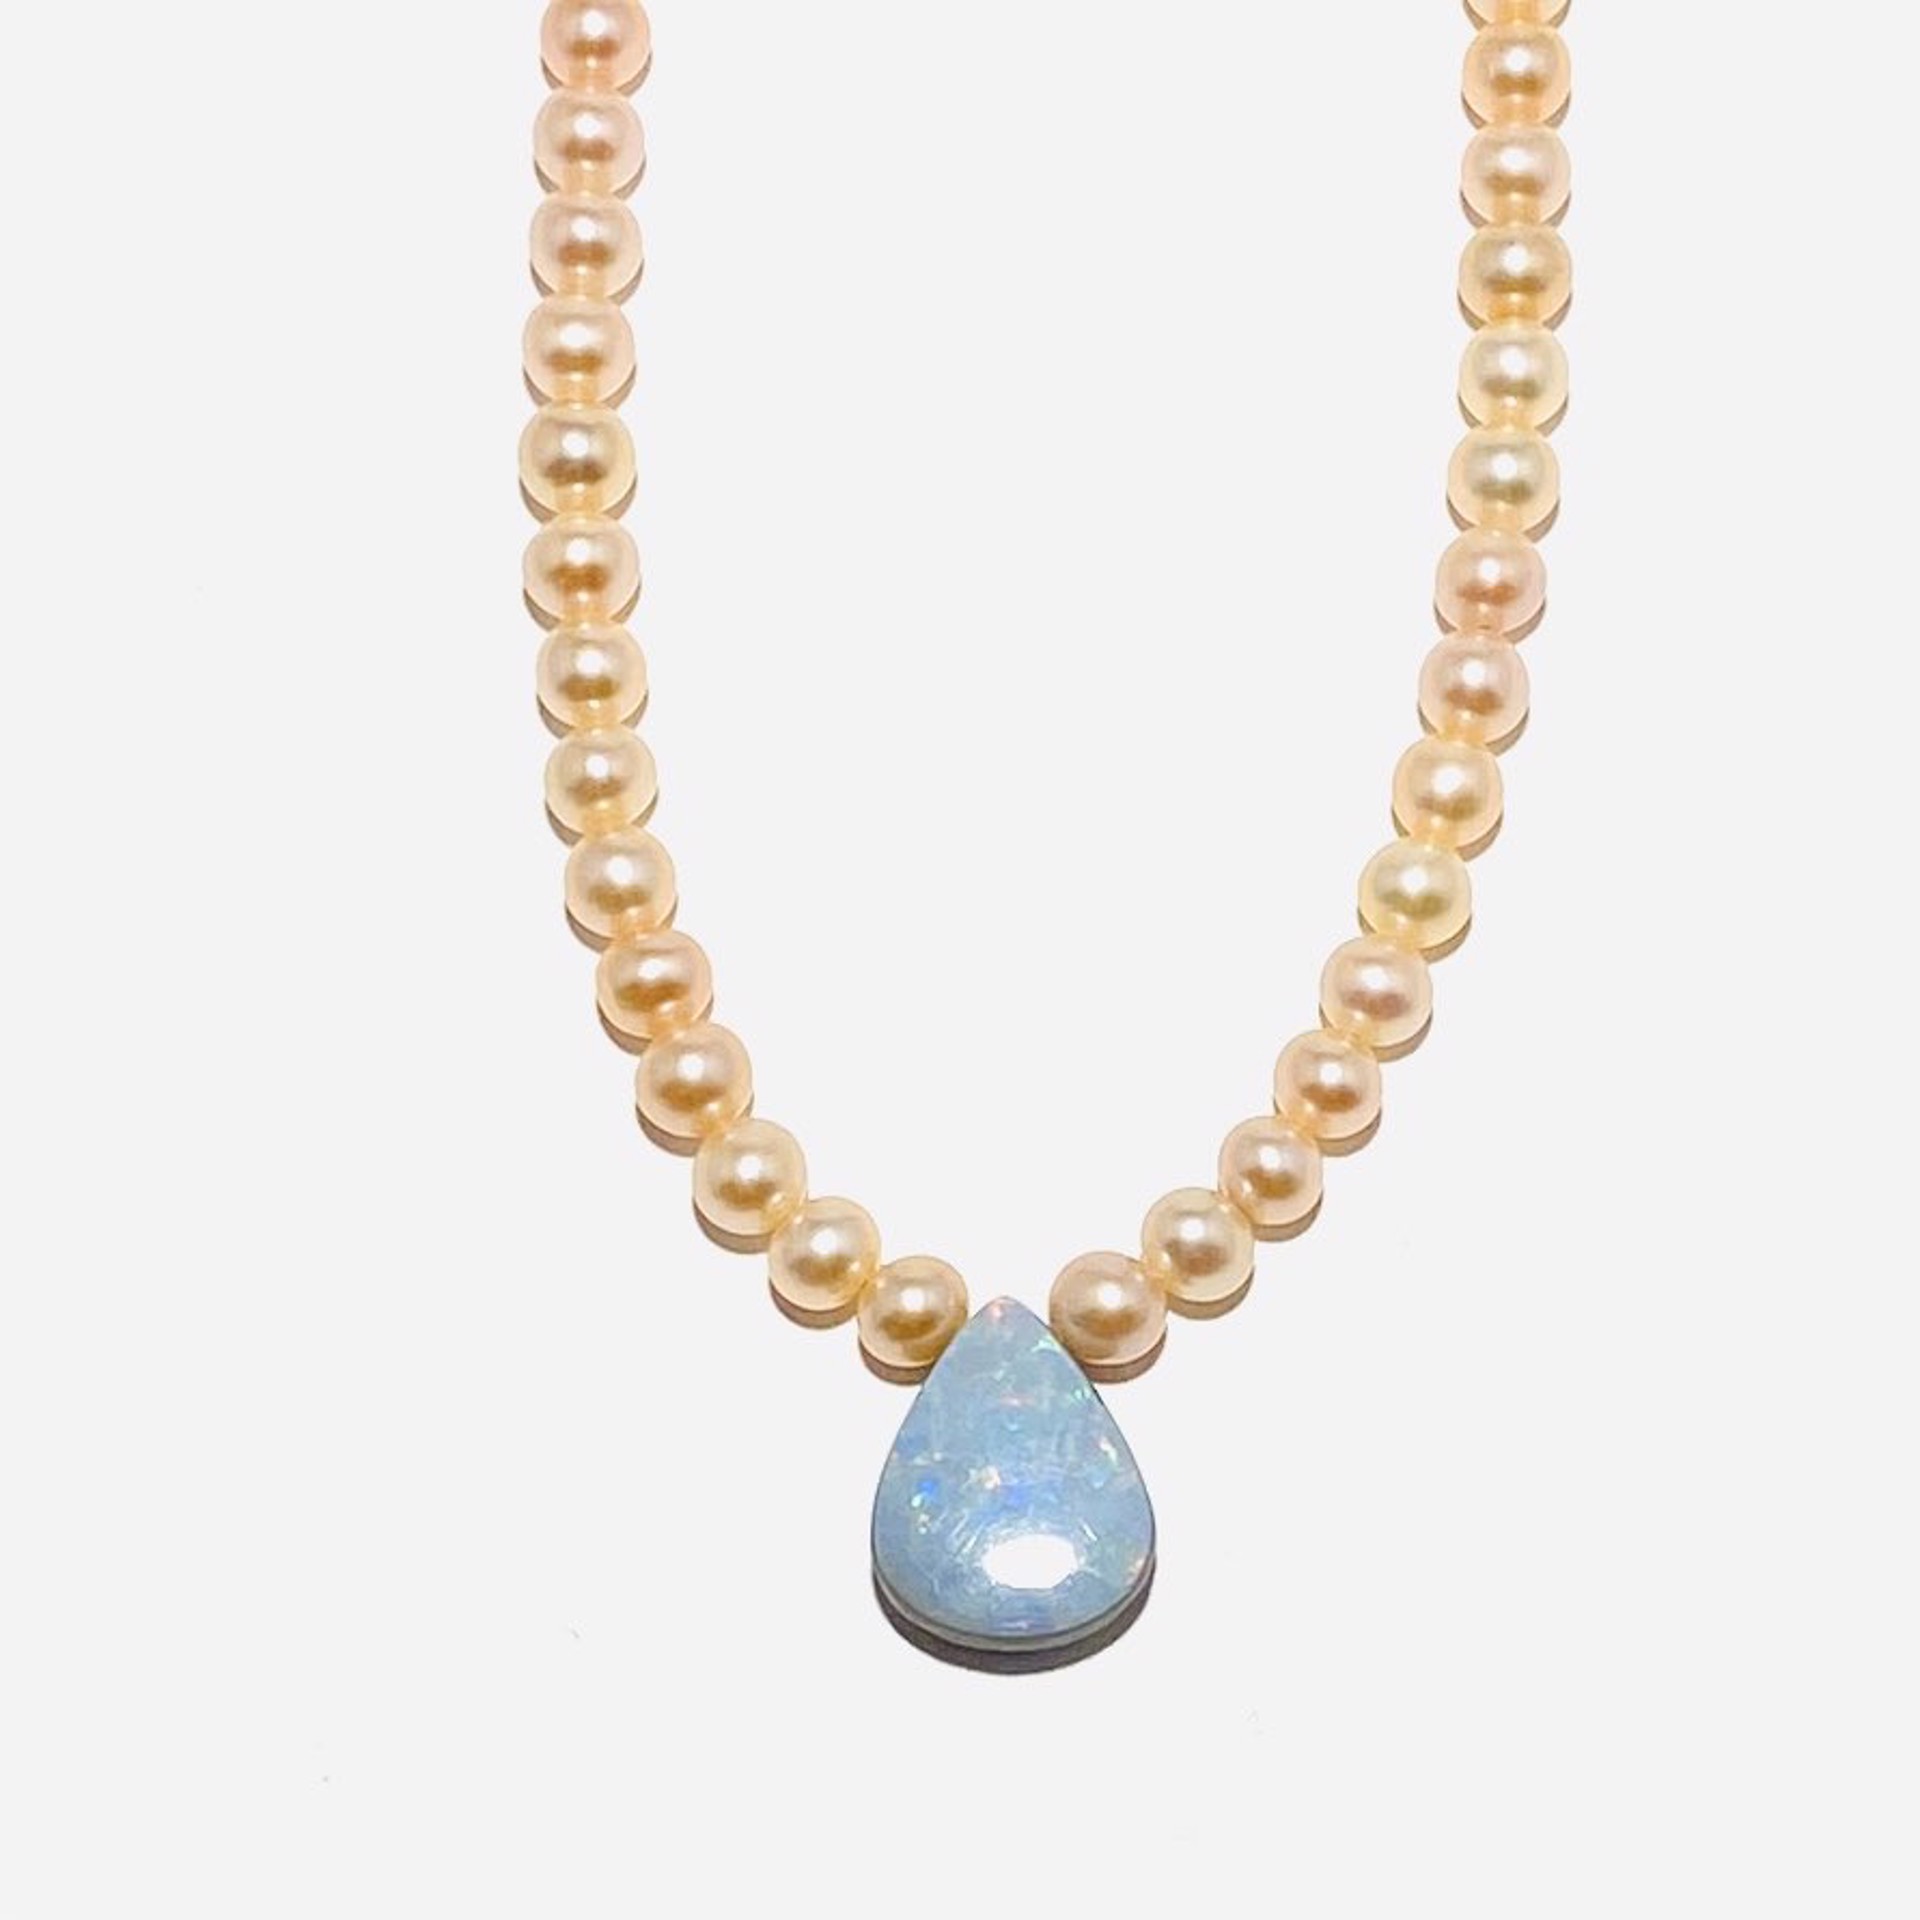 Peach Pearl, Teardrop Australian Opal Focal Necklace NT23-89 by Nance Trueworthy